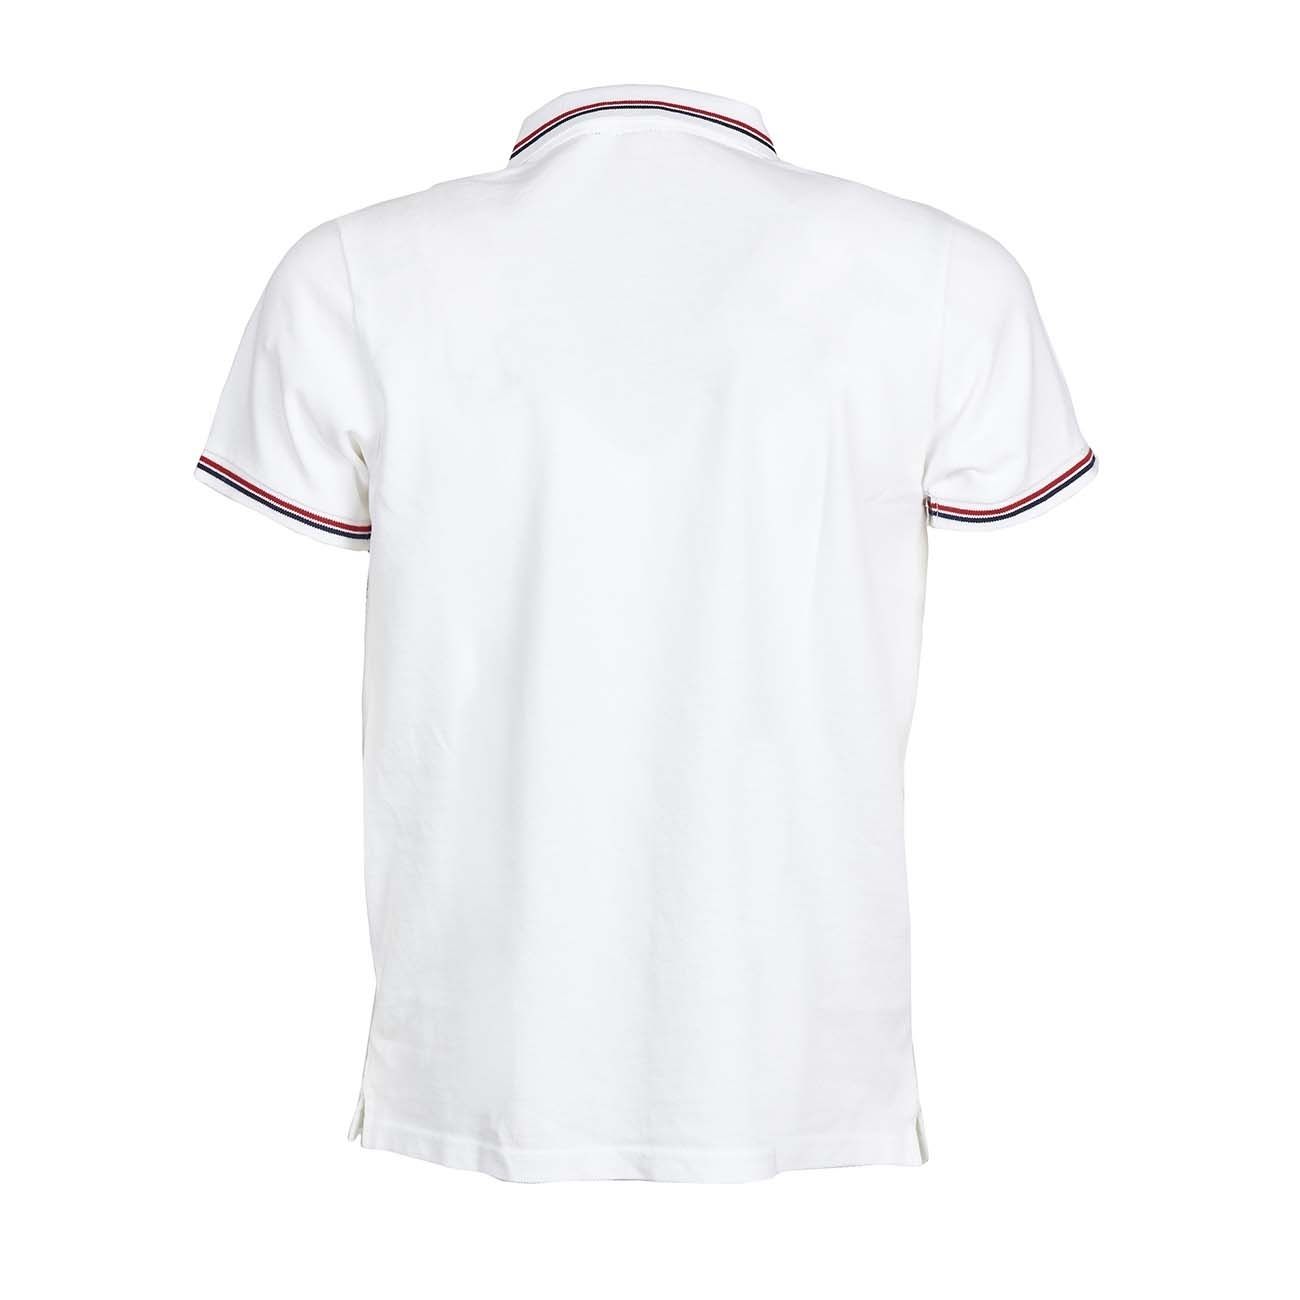 white polo tee shirt